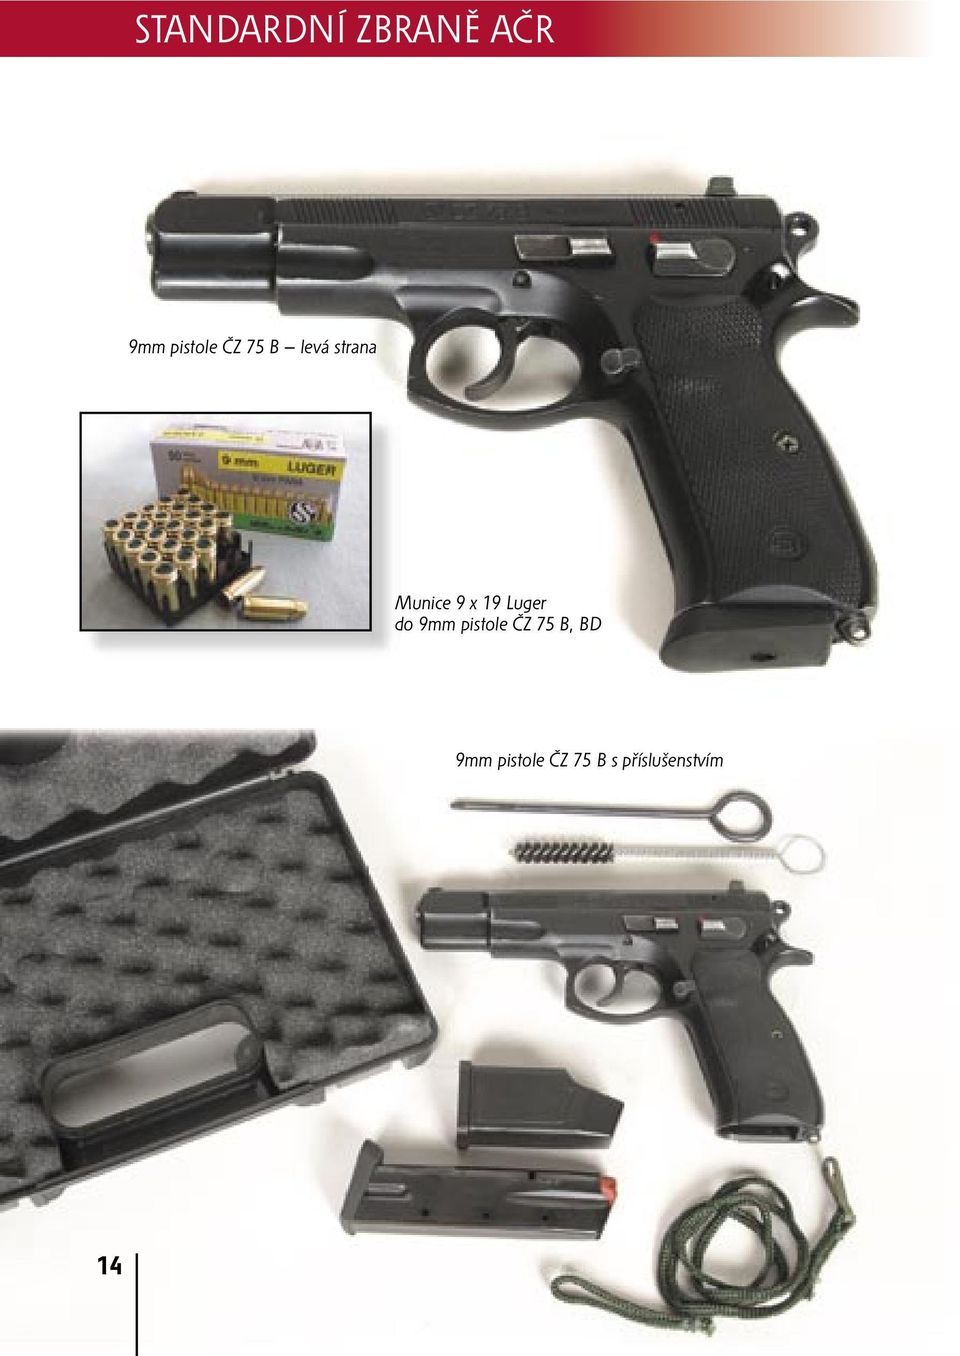 Luger do 9mm pistole ČZ 75 B, BD